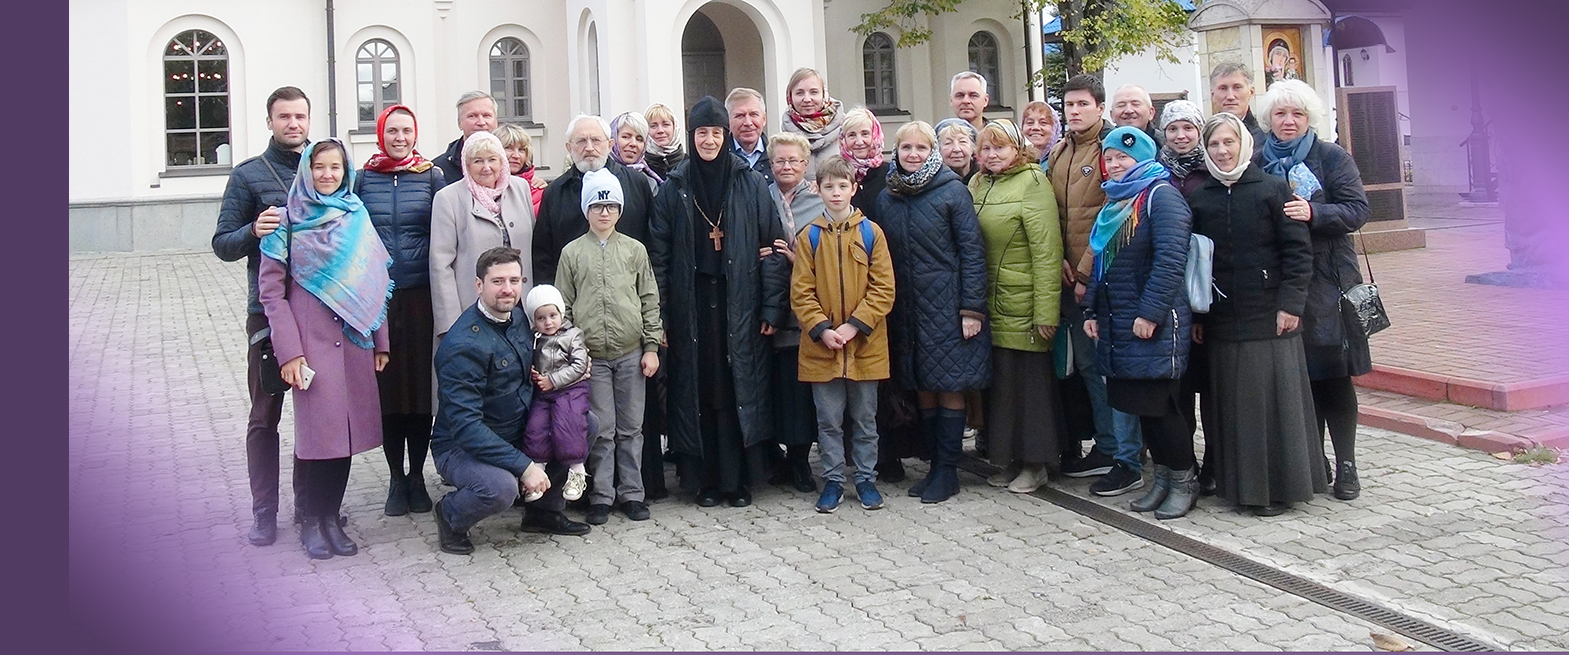 Репортаж о паломничестве общины «Рождество Христово» в Константино-Еленинский монастырь